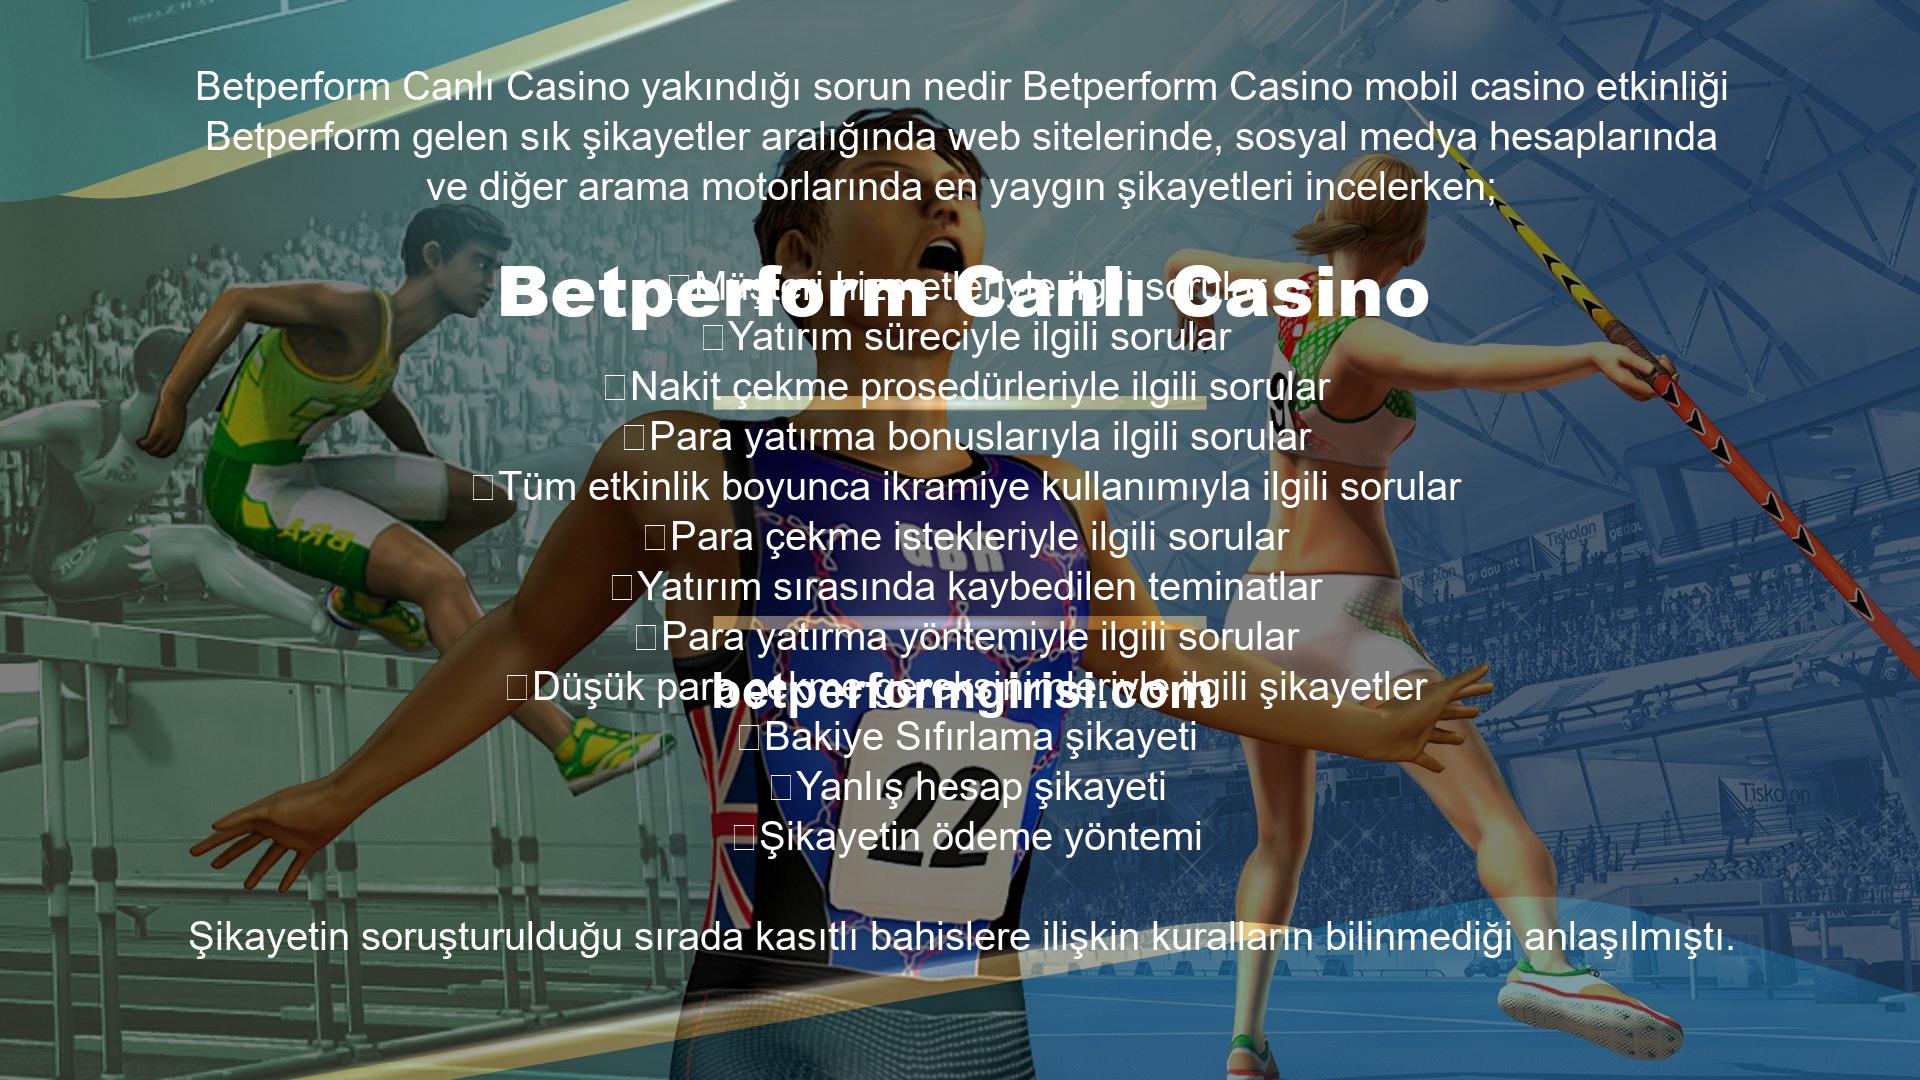 Betperform Sanal Casino
Casino Betperform sanal casino oyunlarını oynamak ve sistemin heyecanını yaşamak isteyen üyelerin anında hizmet için başvurabilecekleri bildirildi